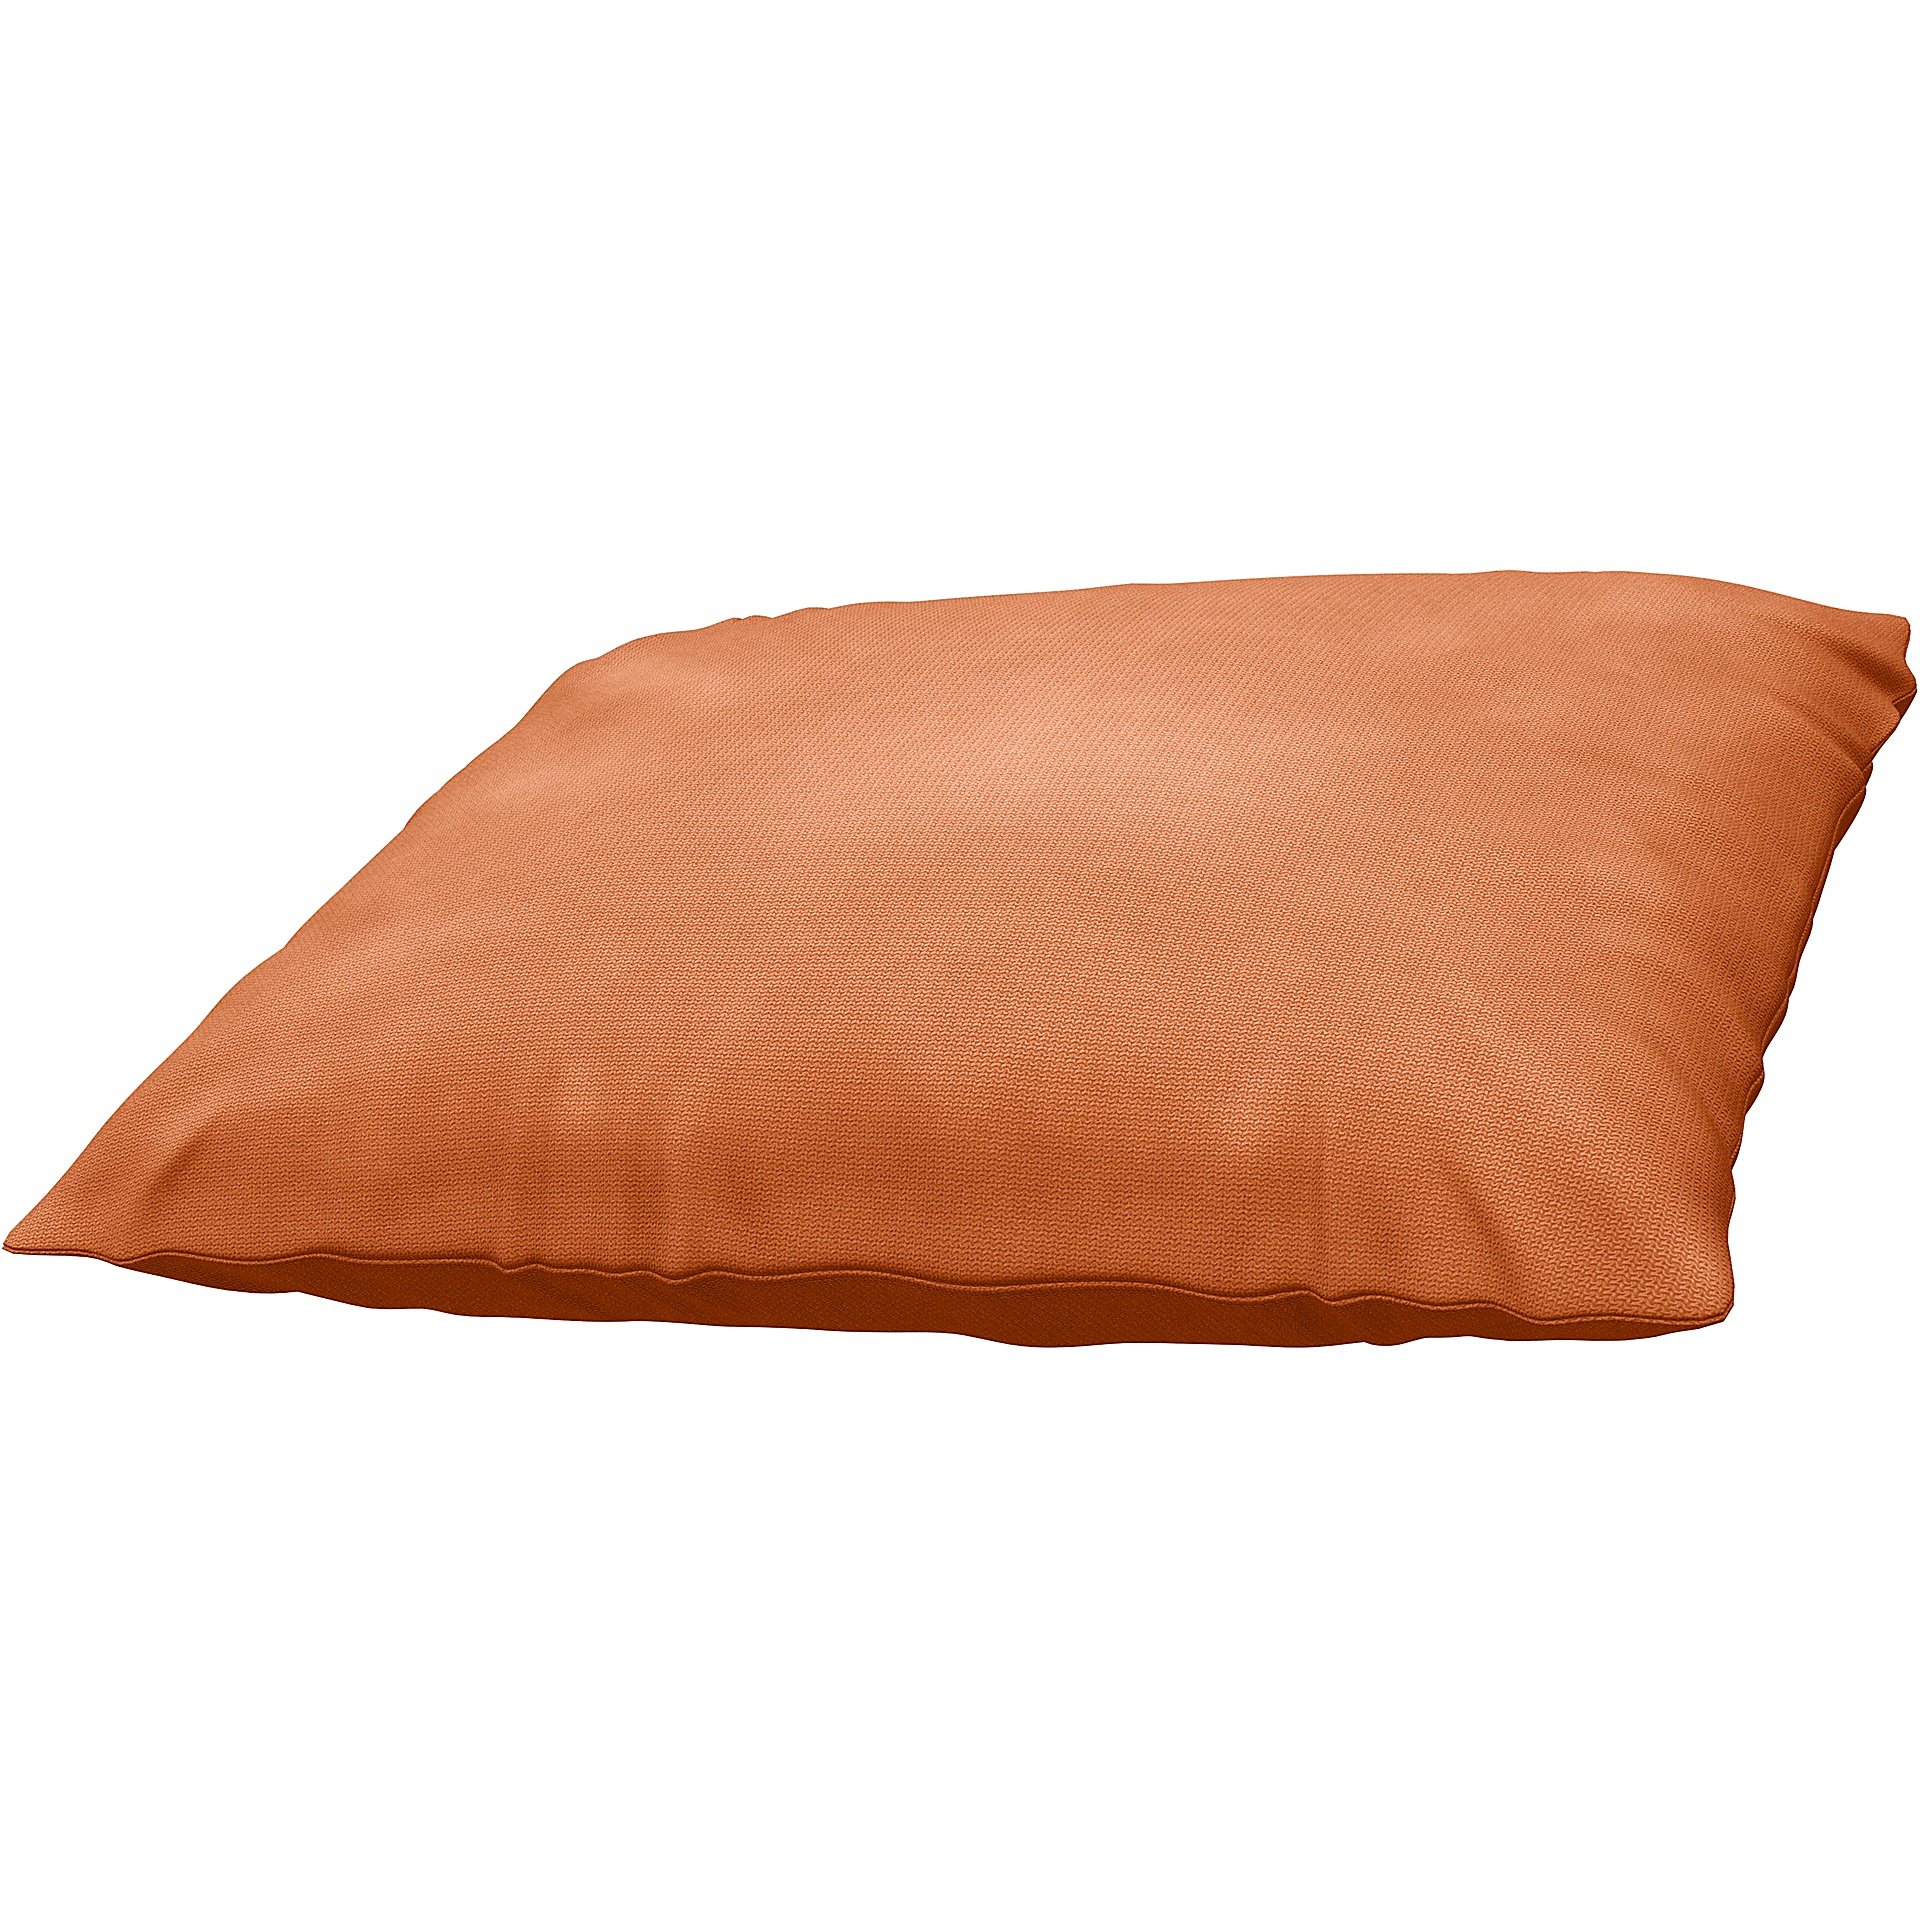 IKEA - Havsten Seat Cushion Cover, Rust, Outdoor - Bemz